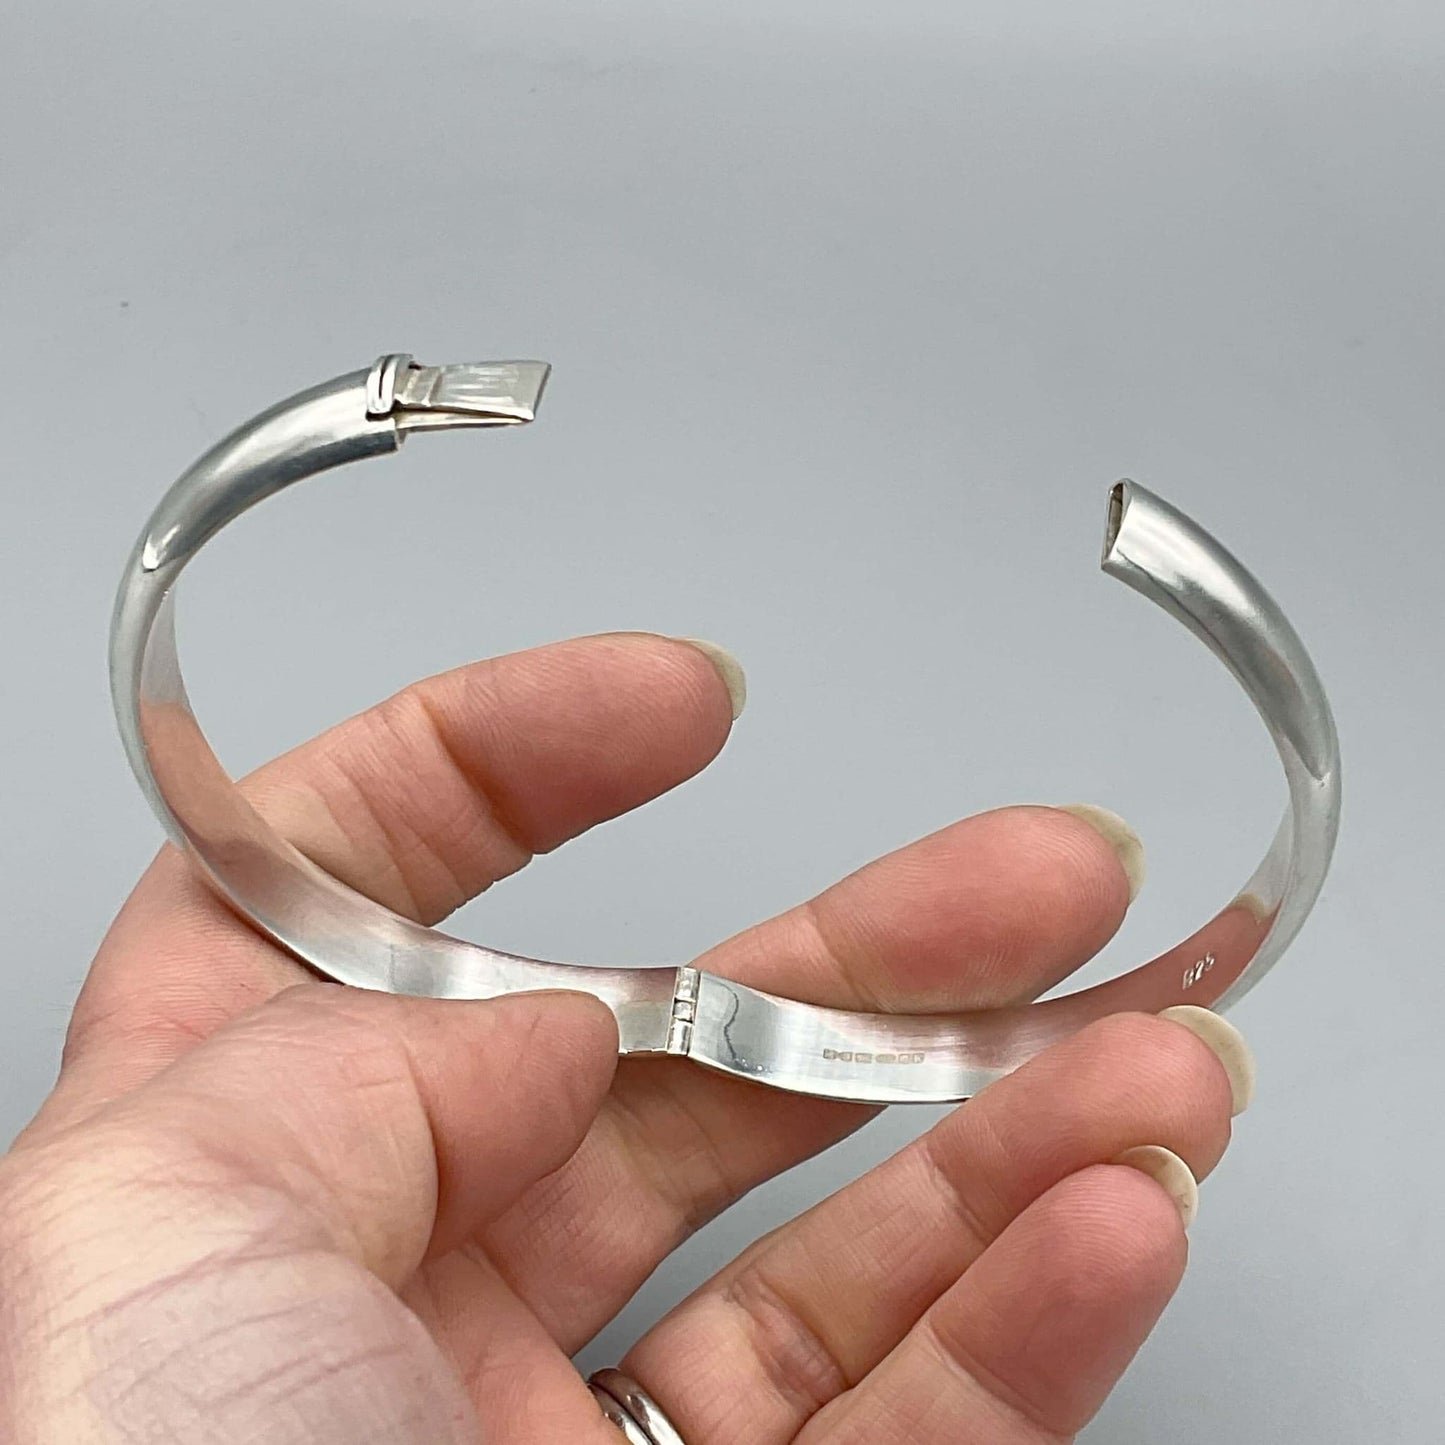 Sterling Silver Hinged Bangle Bracelet, 2009 Hallmark